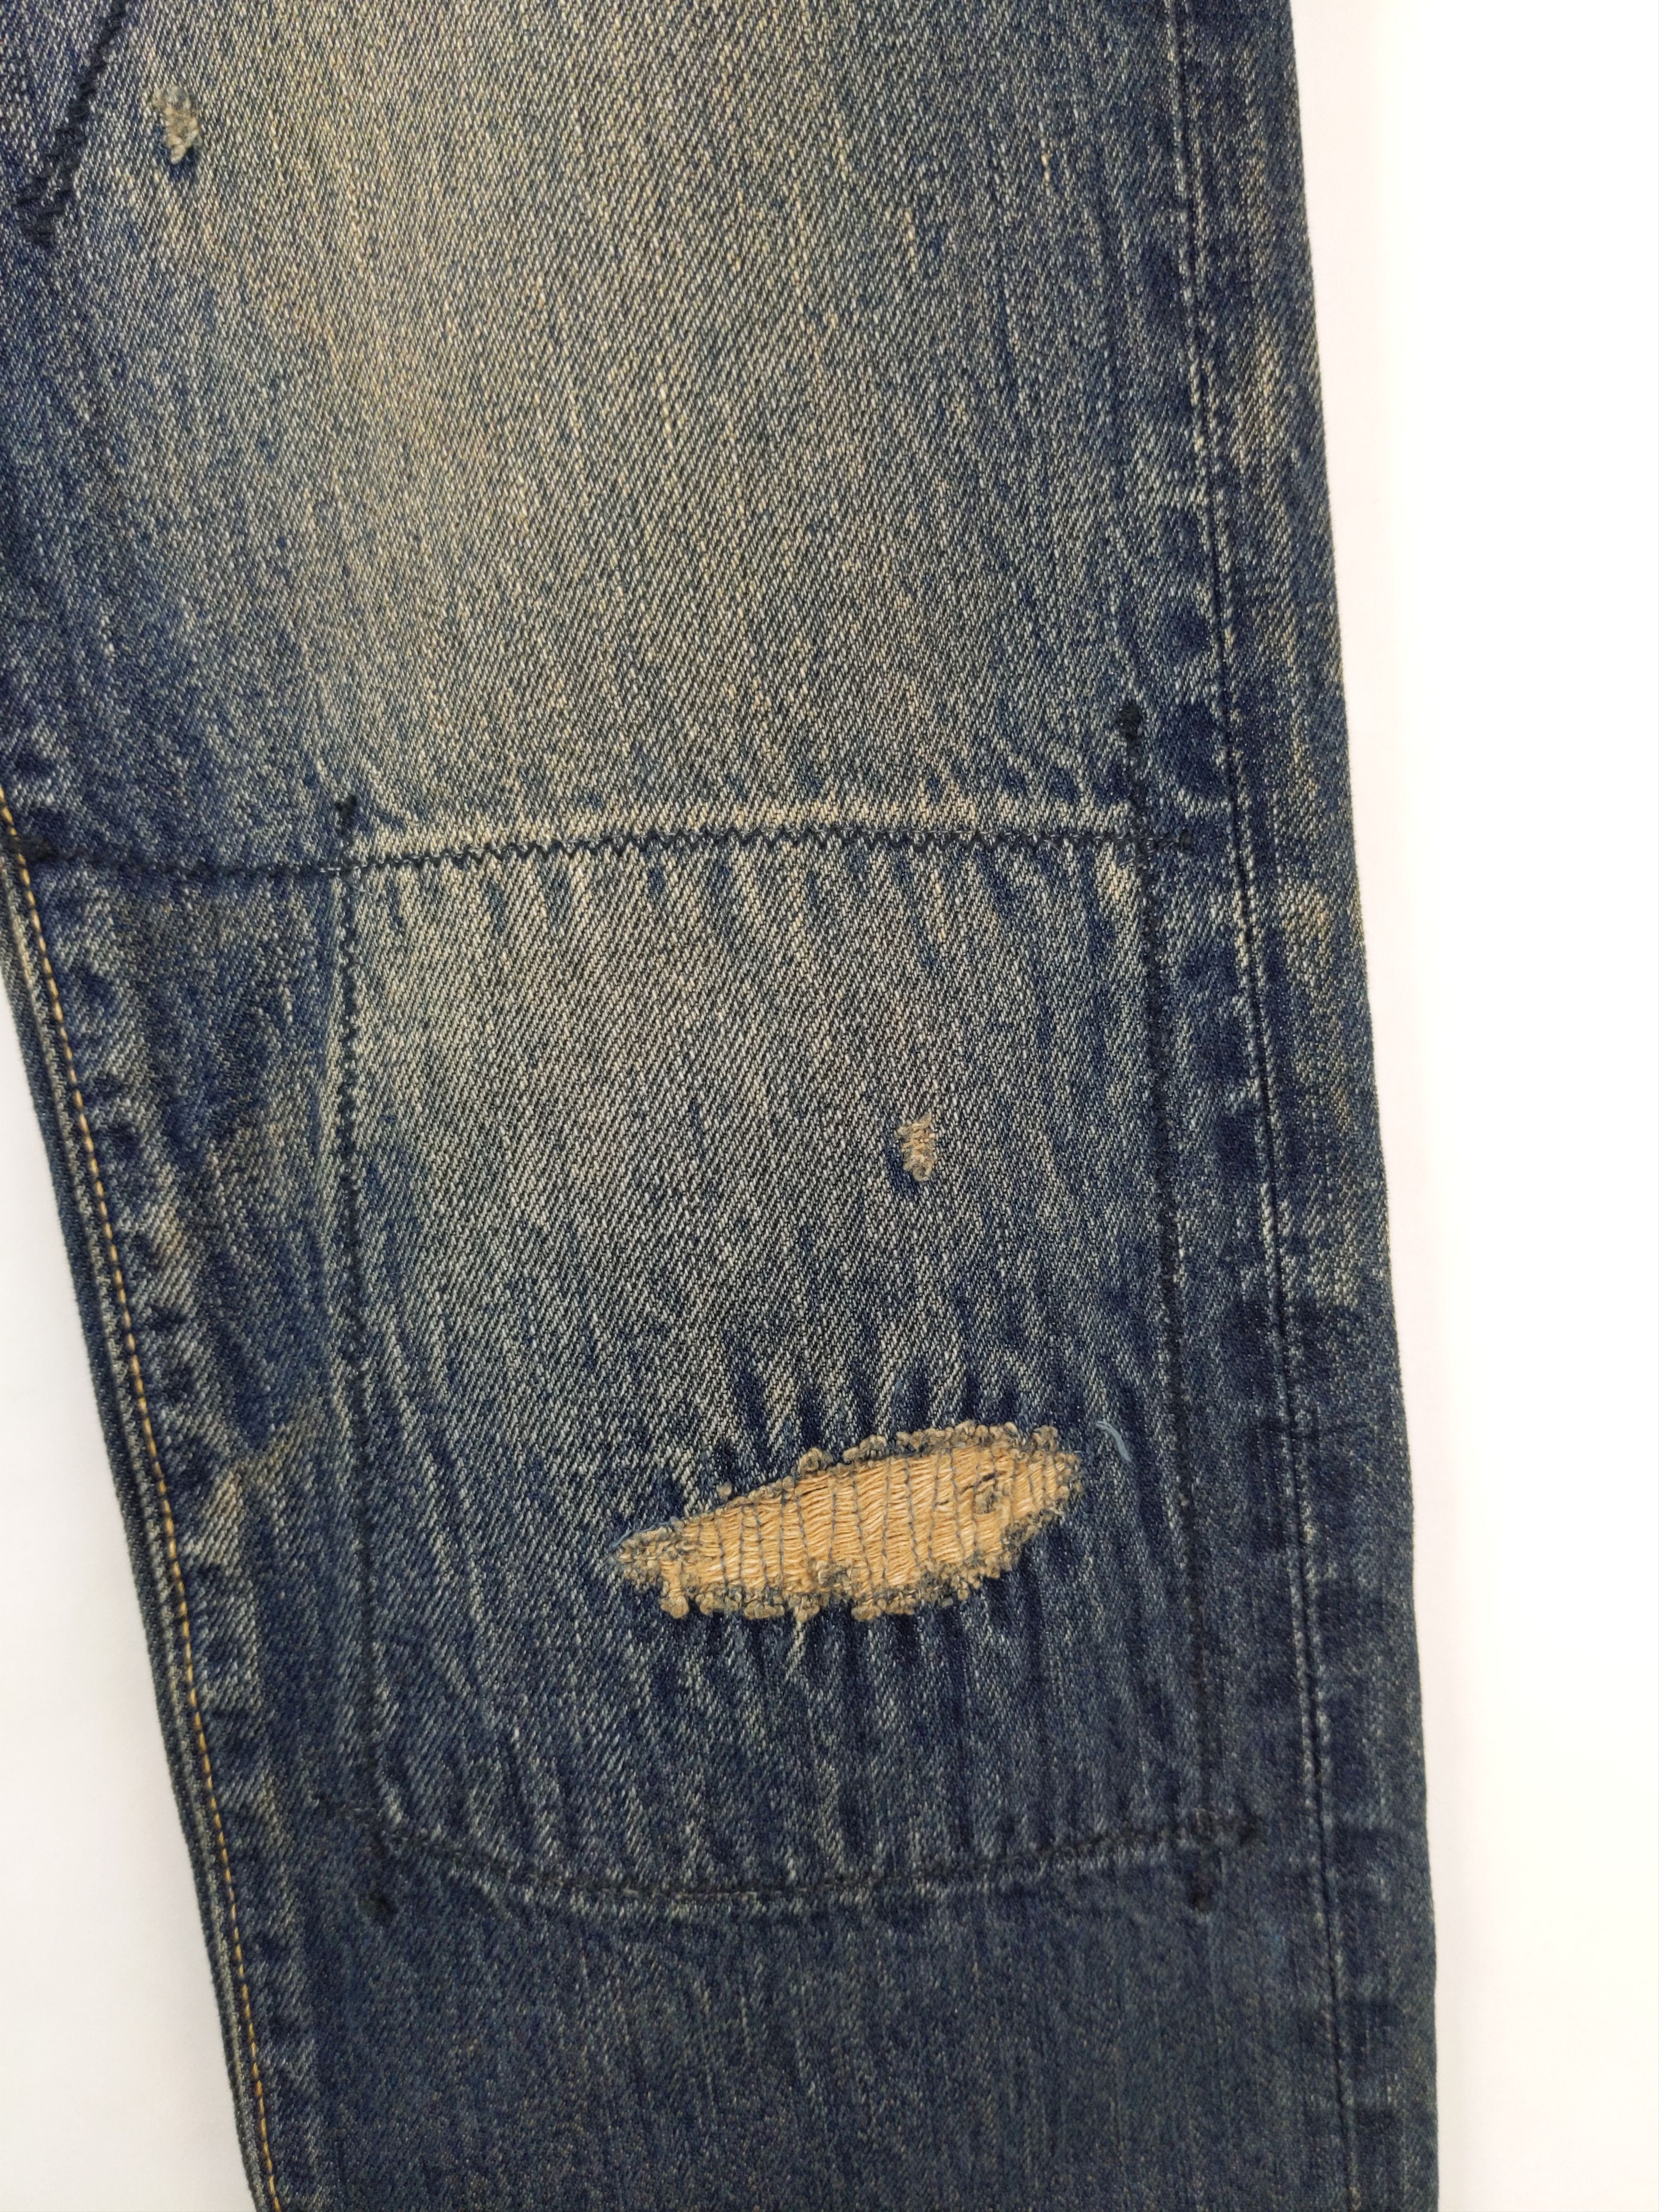 Kapital KAPITAL KOUNTRY Sashiko Boro Bush Pants Jeans Denim US S Size US 29 - 6 Thumbnail